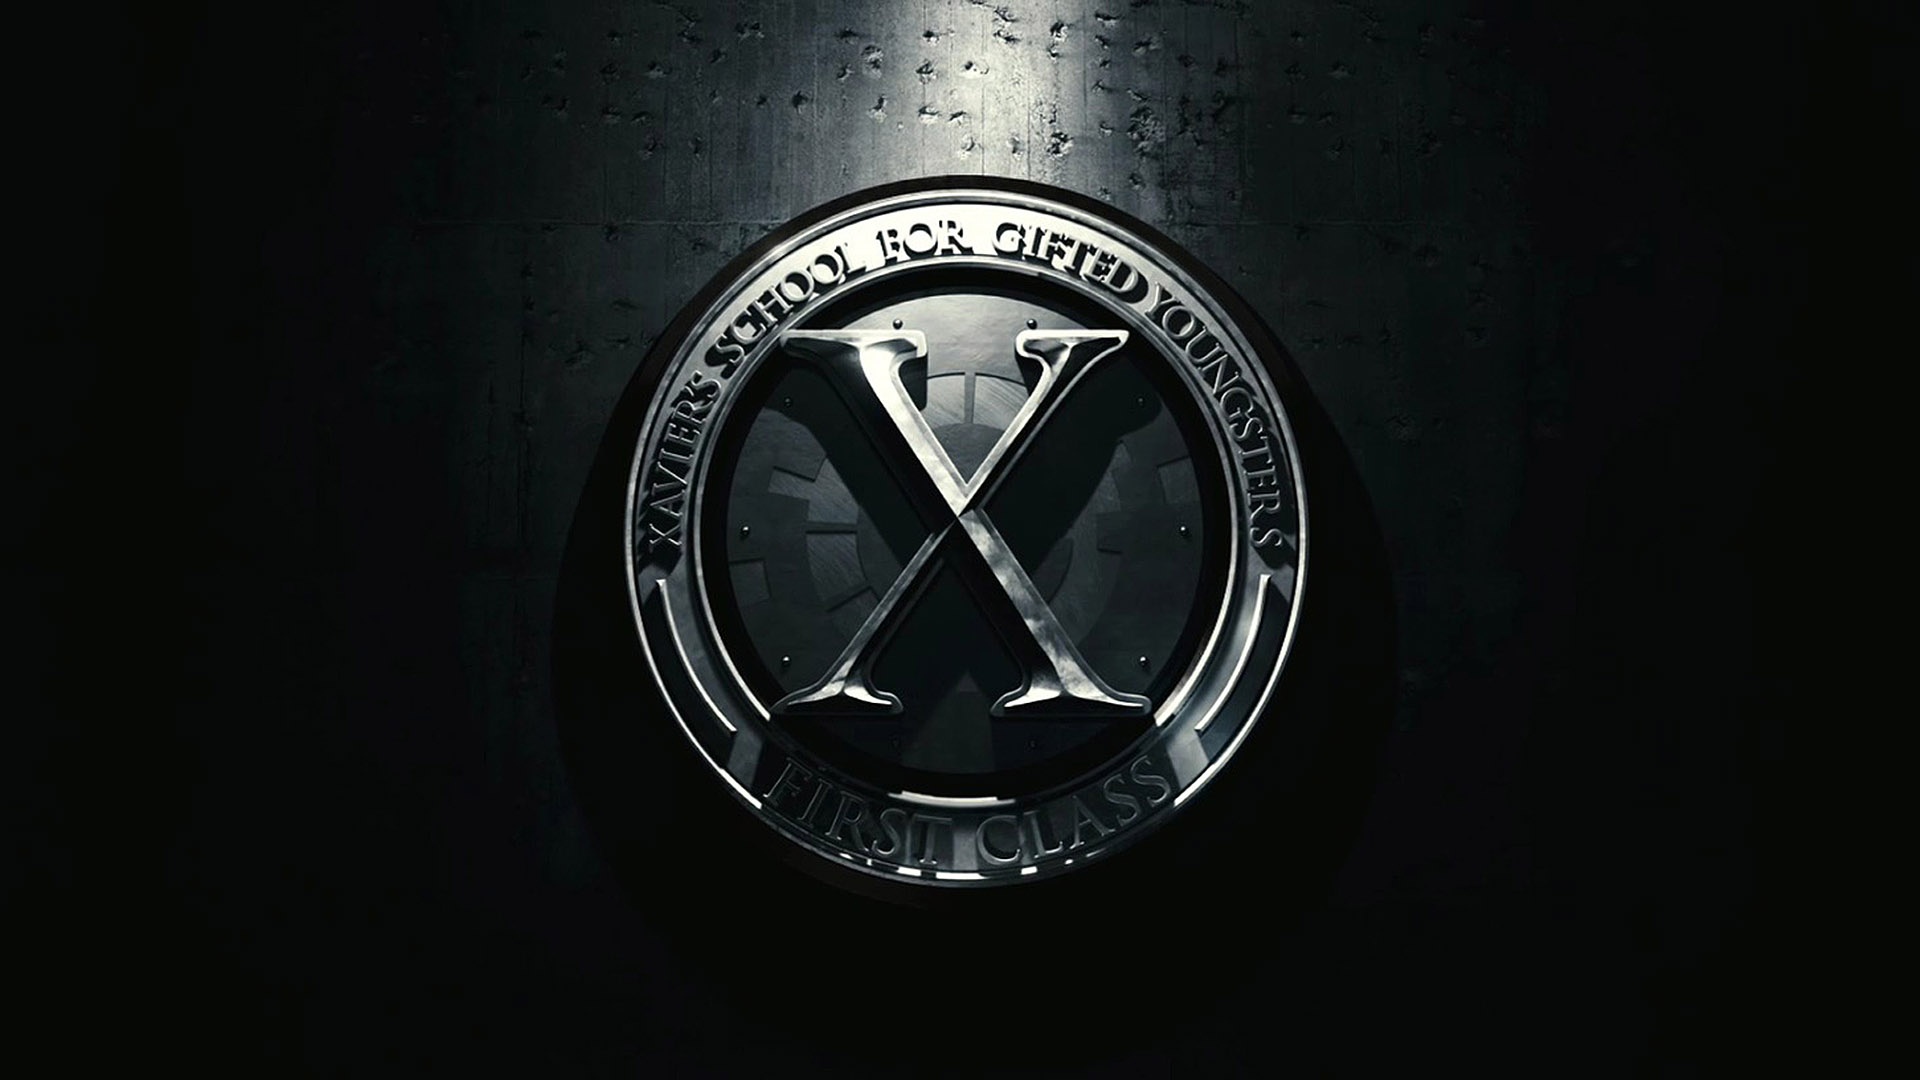 X Men First Class Wallpapers, X Men First Class Backgrounds, X Men